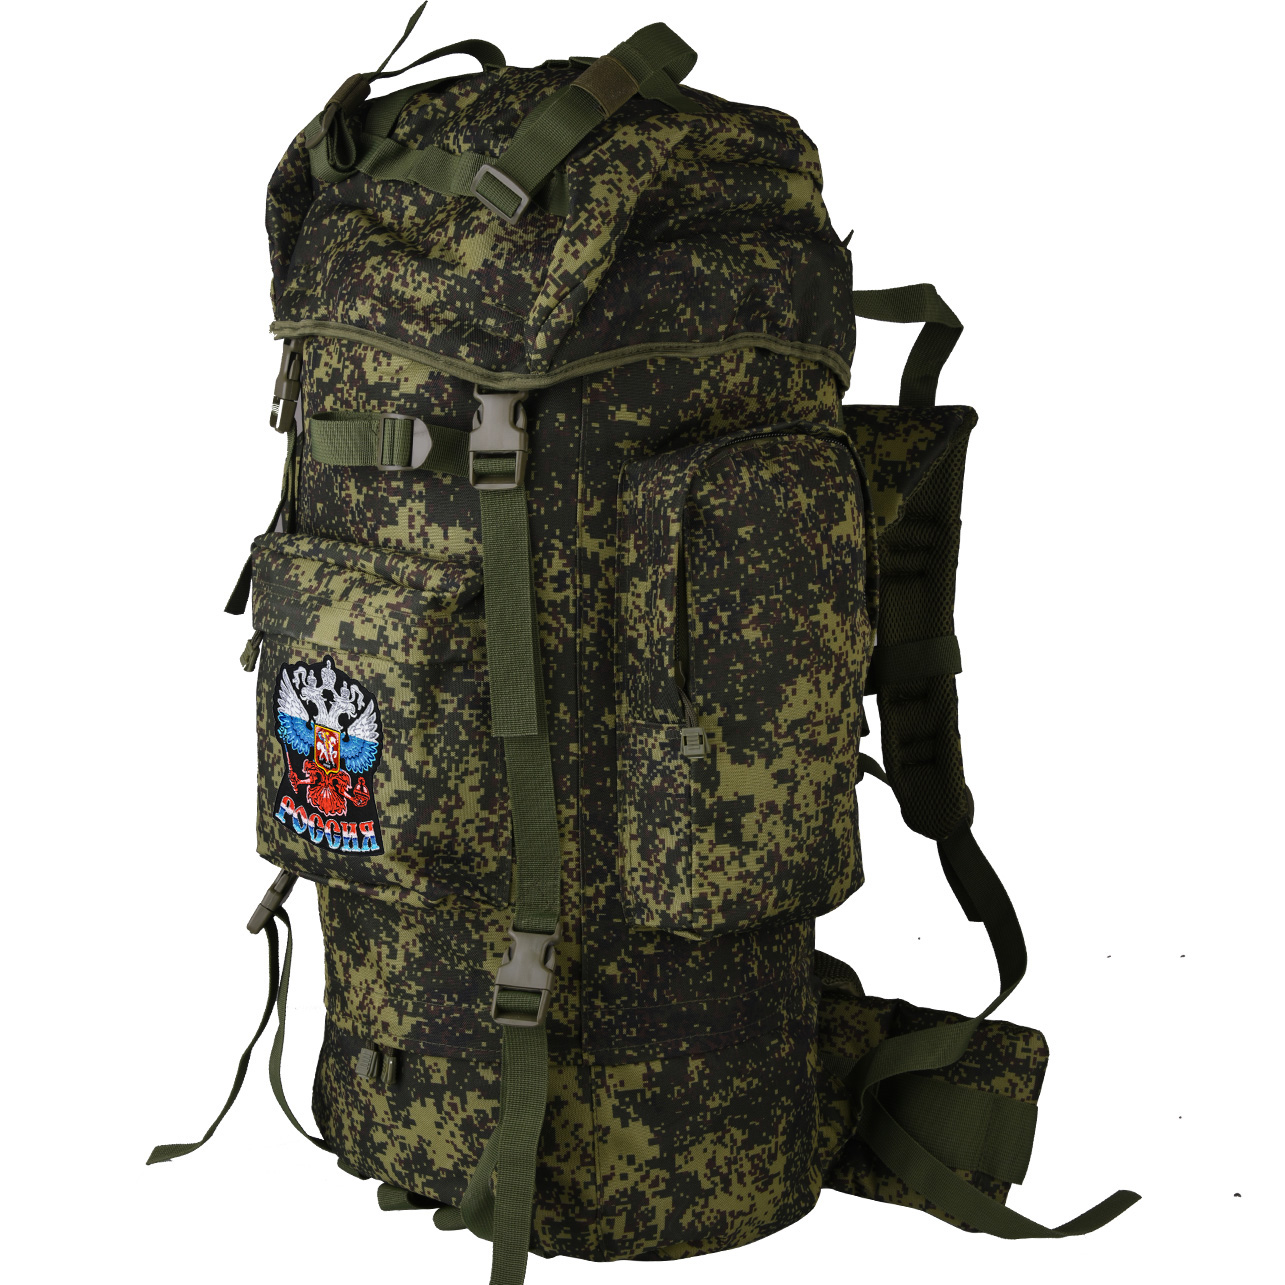 Тактический рейдовый рюкзак для Вооруженных Сил с эмблемой "Россия"  